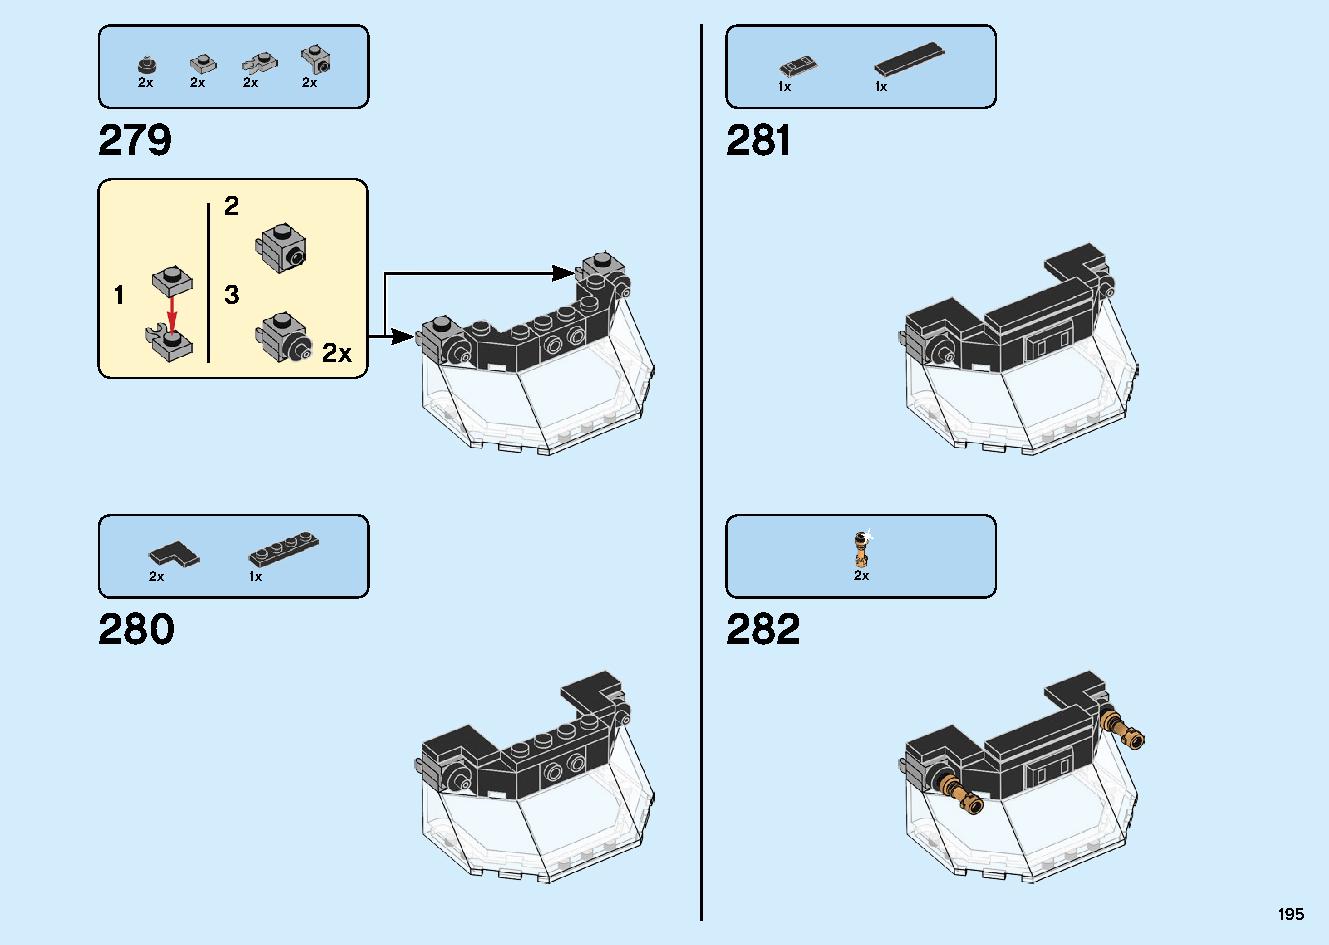 陸上戦艦バウンティ号 70677 レゴの商品情報 レゴの説明書・組立方法 195 page